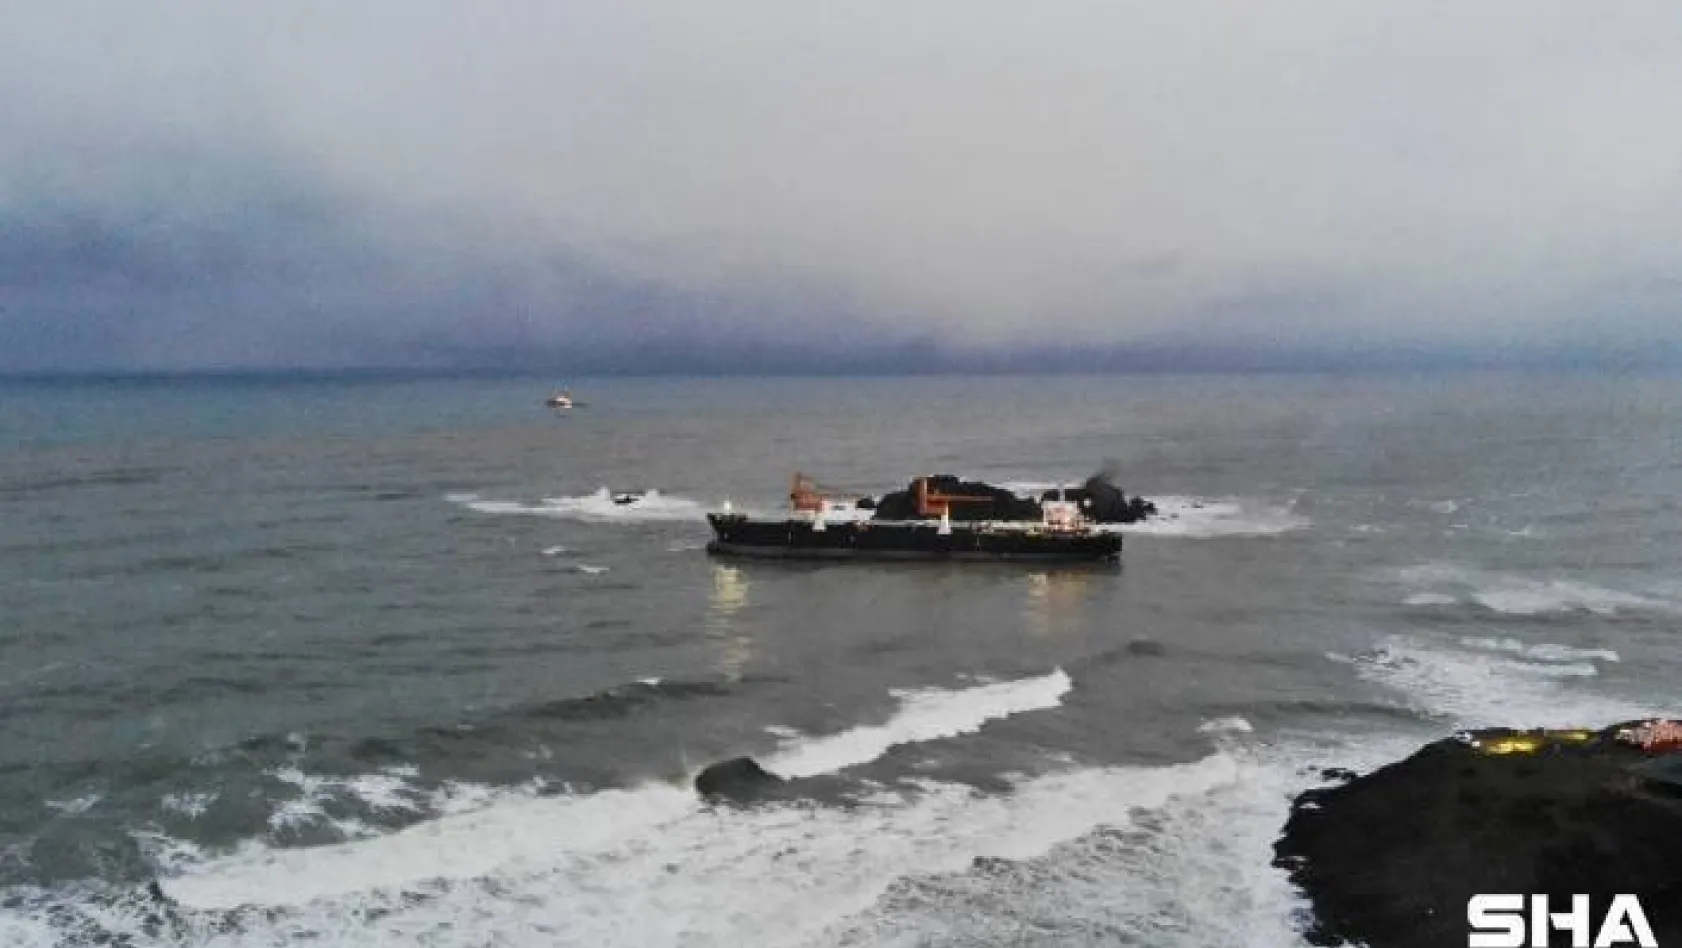 Riva'da karaya oturan geminin son hali havadan görüntülendi